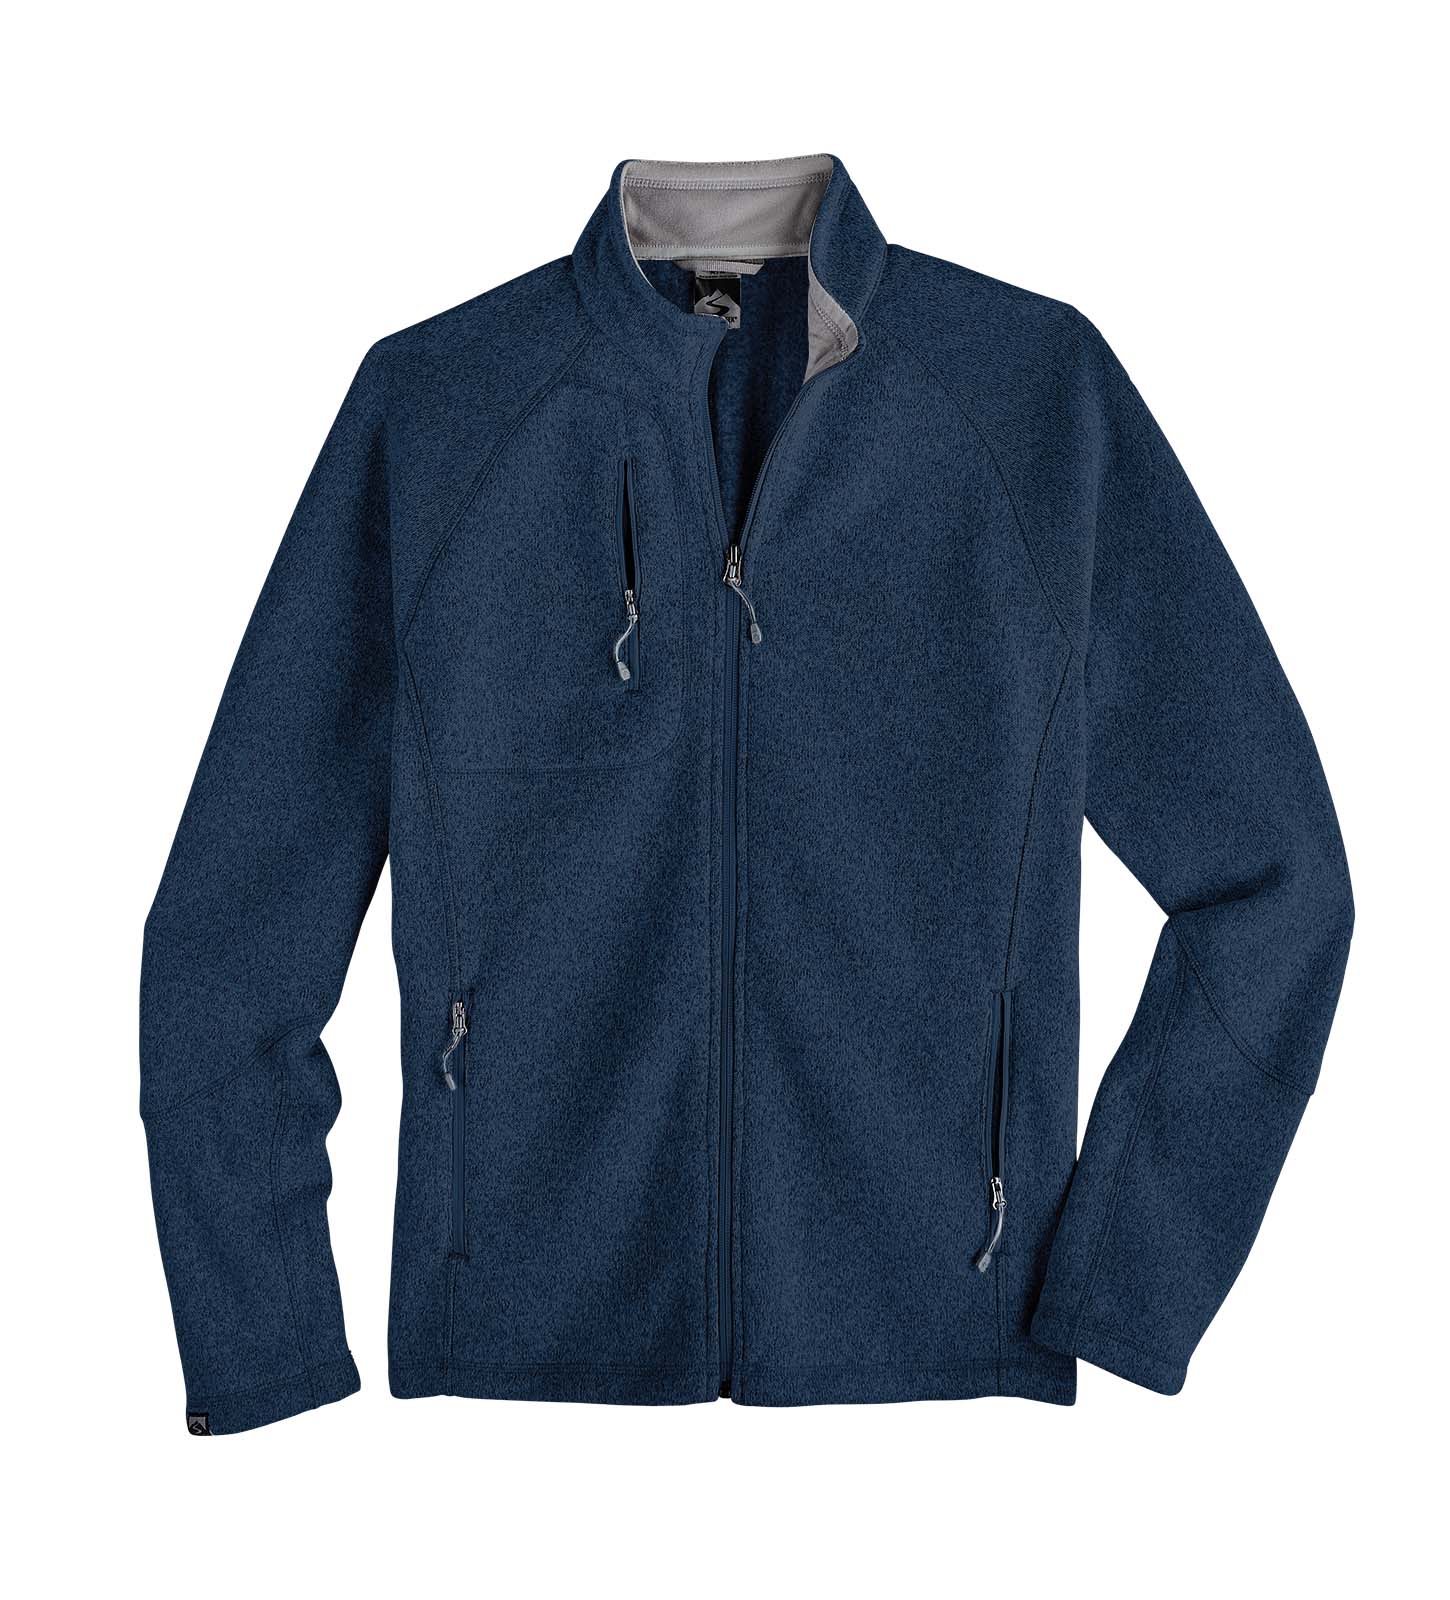 Customizable Storm Creek® Men's Overachiever Sweaterfleece Jacket in navy.